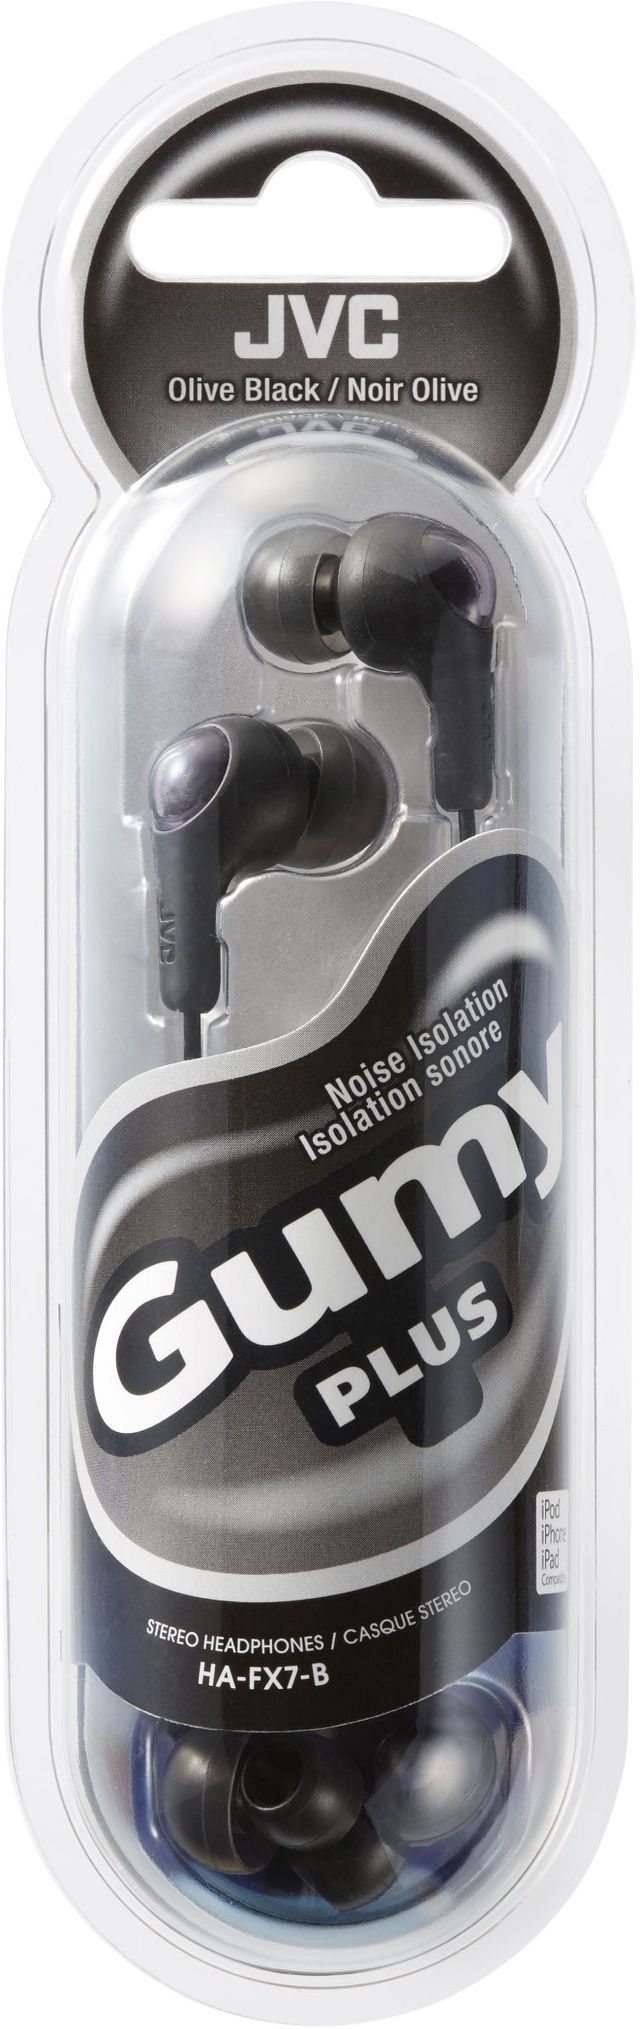 JVC HA-FX7 Olive Black Gumy Plus In-Ear Headphones 1